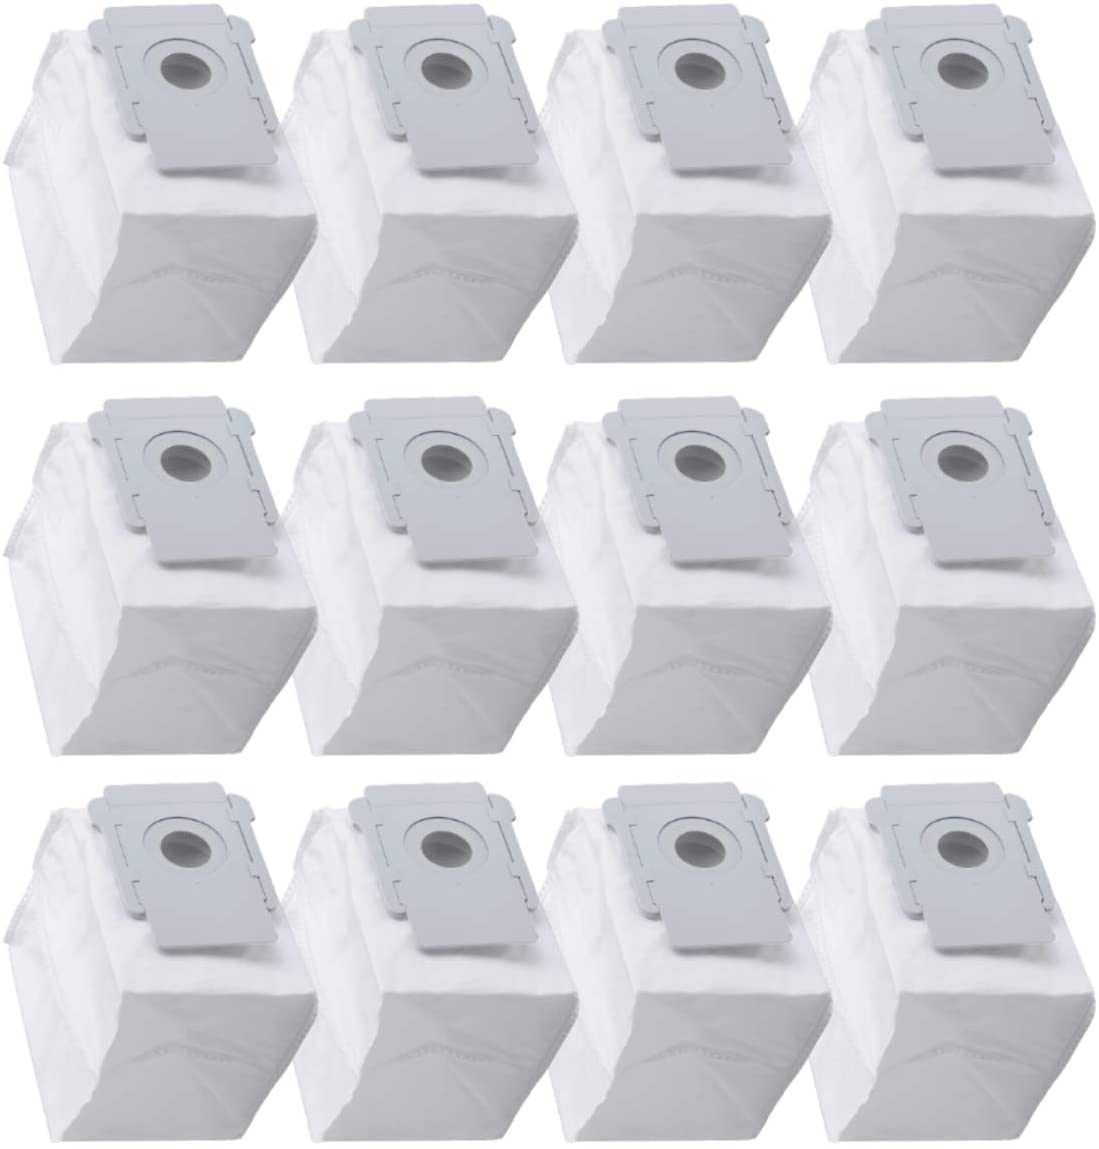 【美國代購】Ashineme 12 件裝 iRobot I7 I8 & S 系列零件清潔底座塵袋更換零件 Roomba 配件